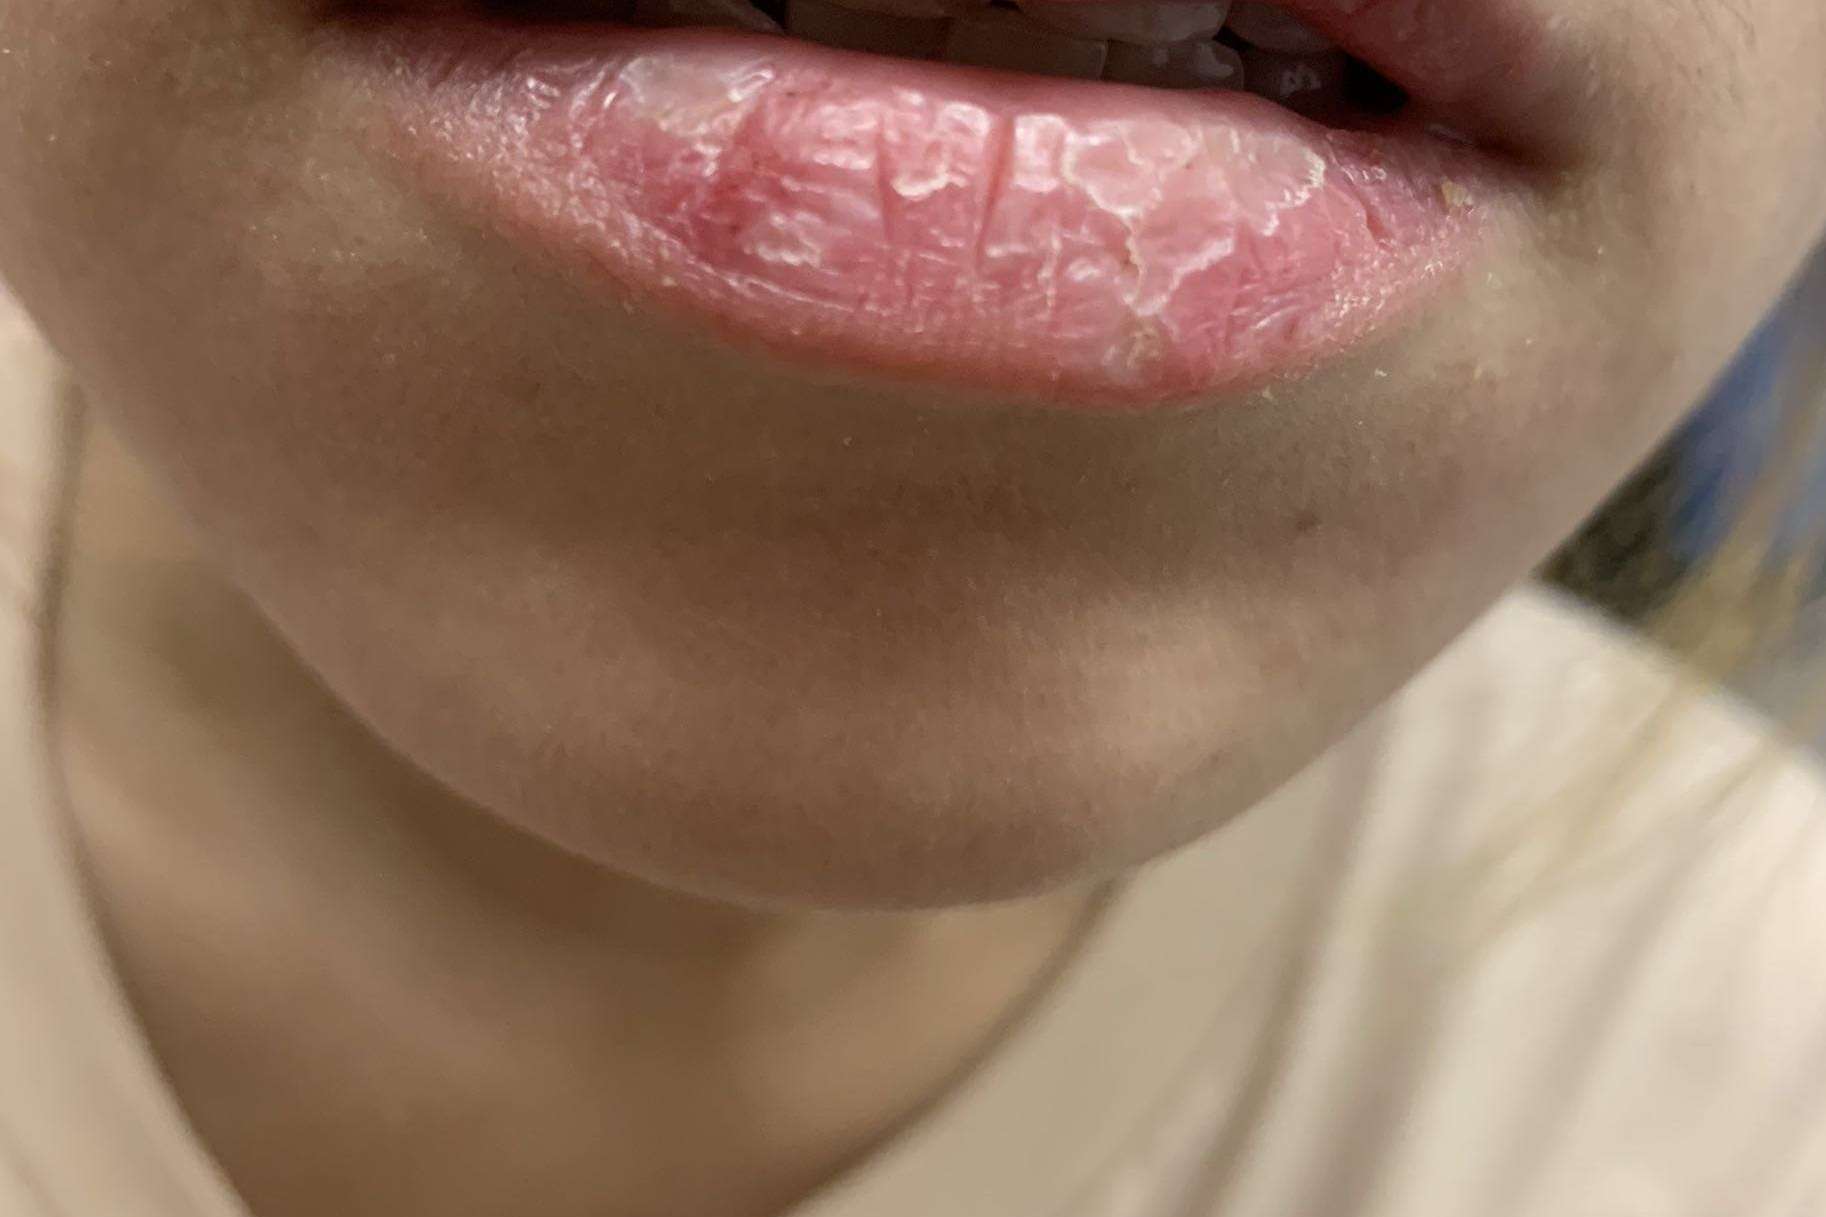 Đánh son hơn 10 lần/ngày, môi của cô gái 23 tuổi nứt nẻ như vỏ cây - Ảnh 1.